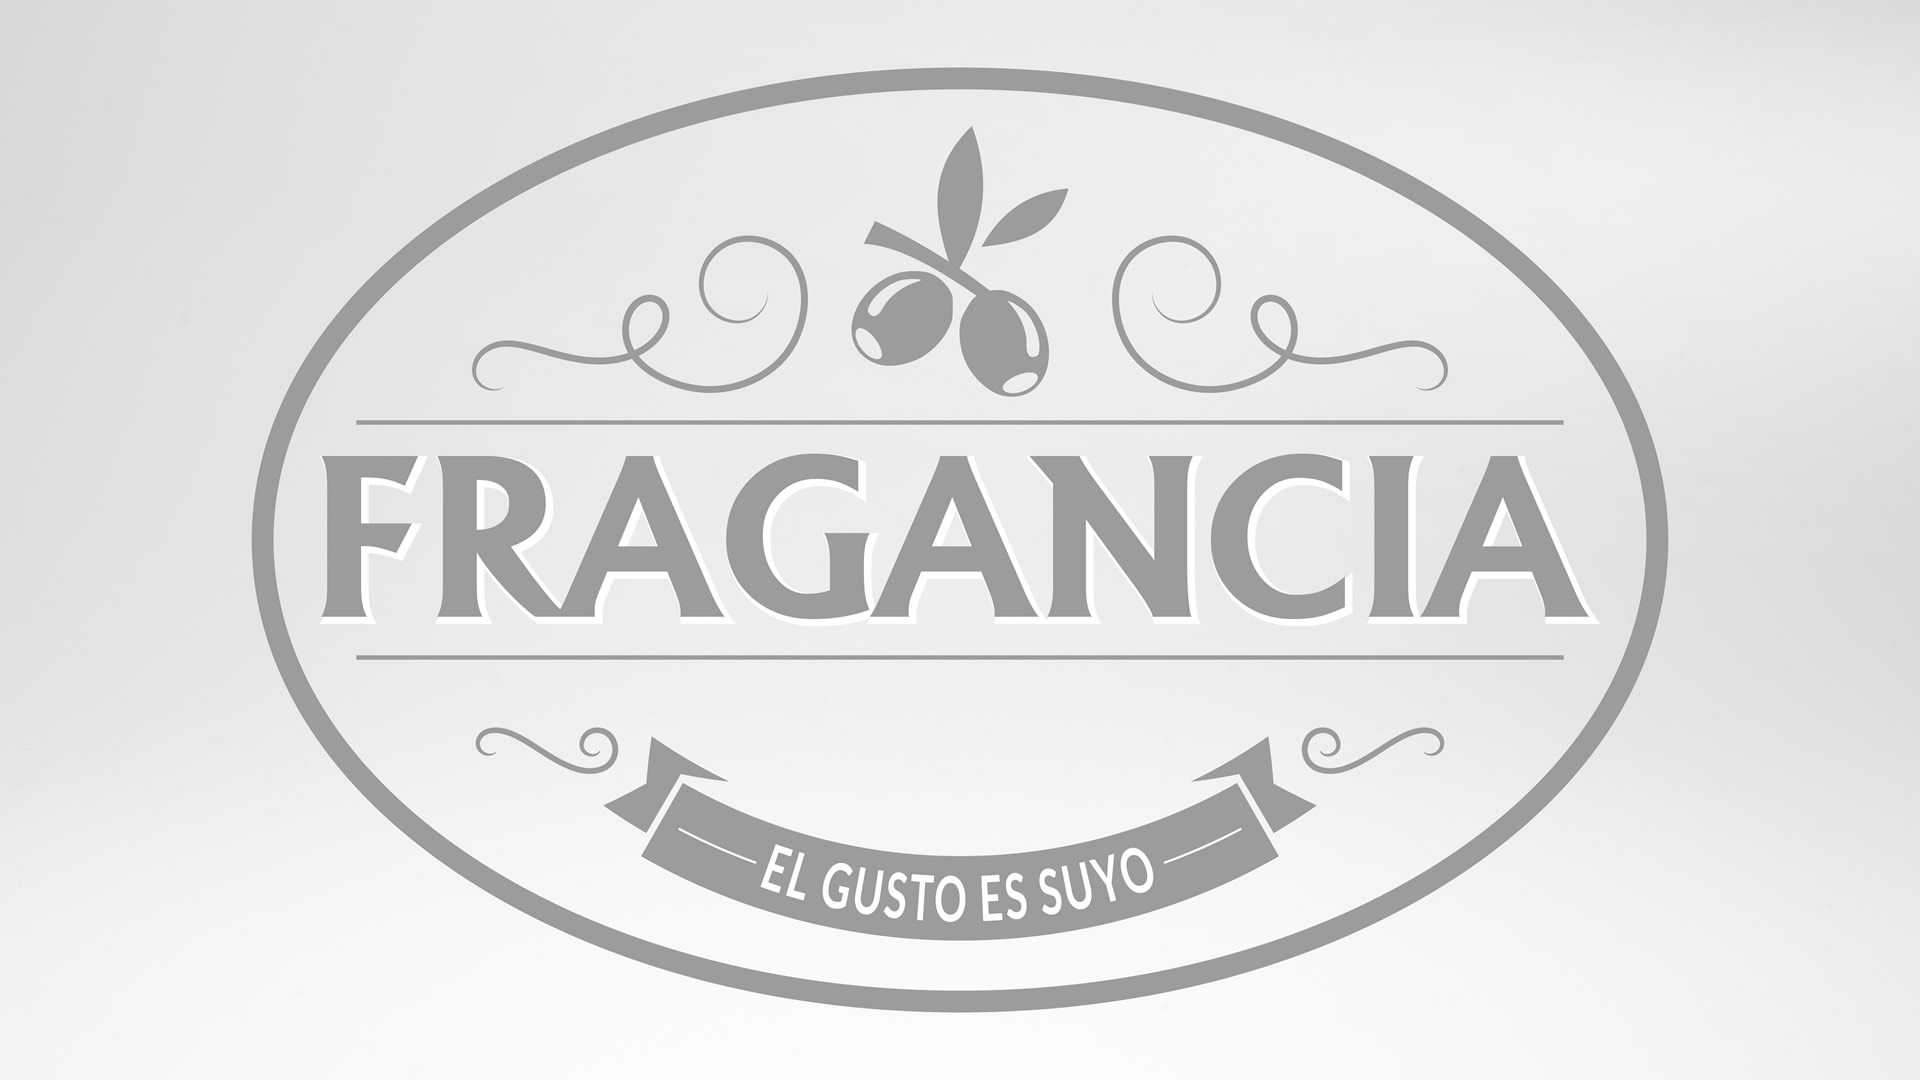 Fragancia Olive Oil Logo - Grafica etichette Olio - realizzazione Sito Web - Patrizio Rossi - Portfolio Web Graphic Designer